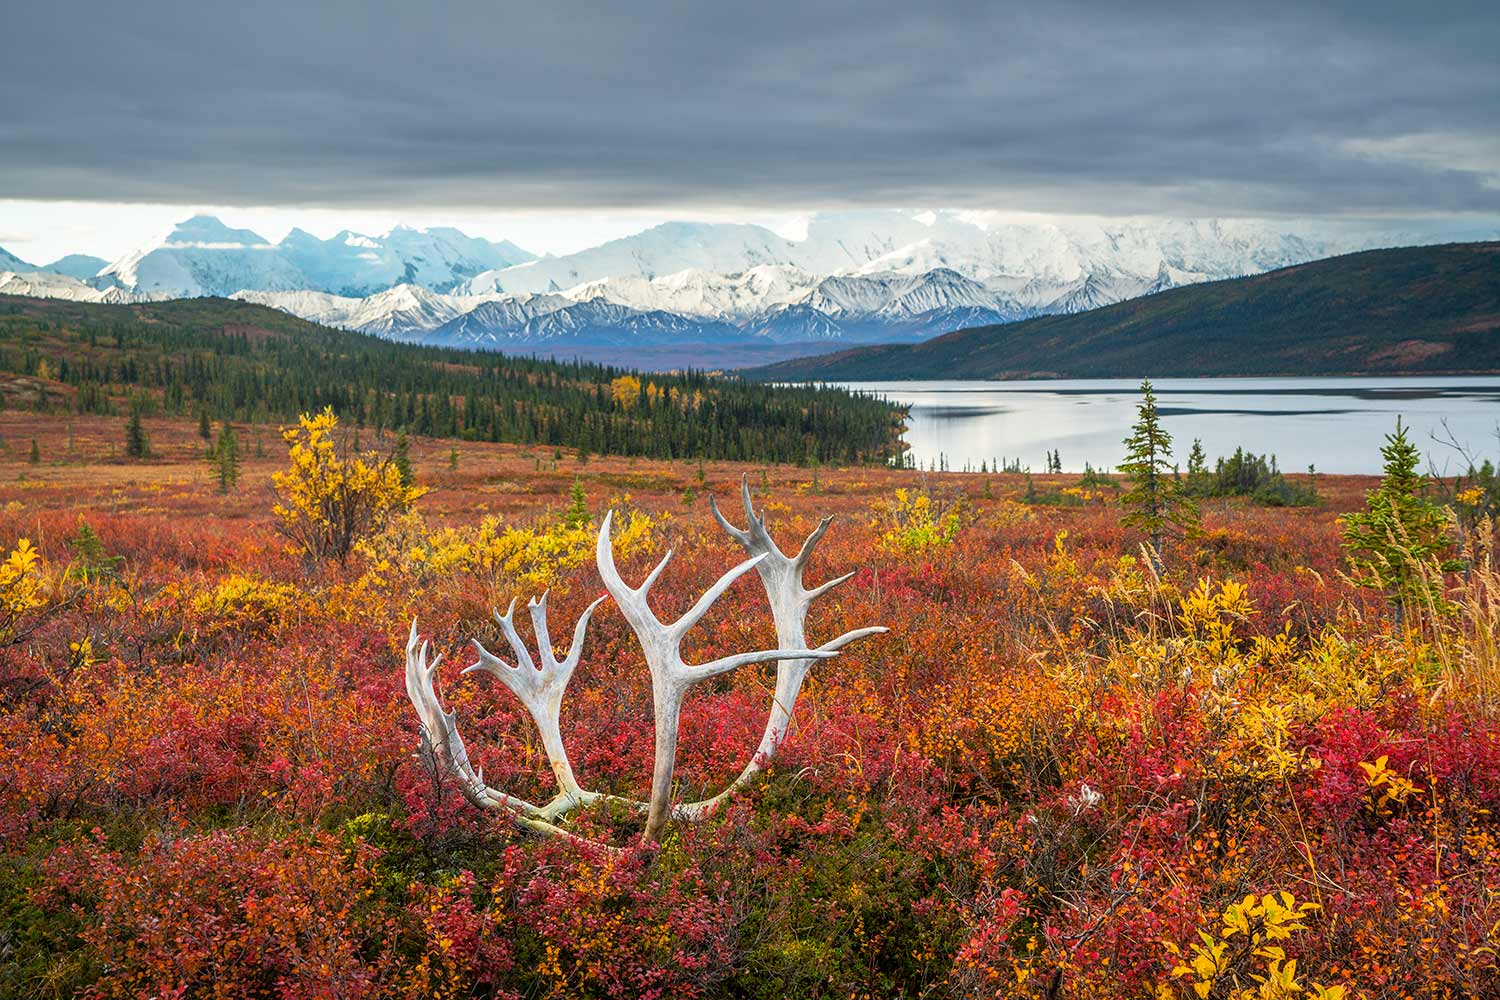 Chris Burkard, Denali National Park, Alaska